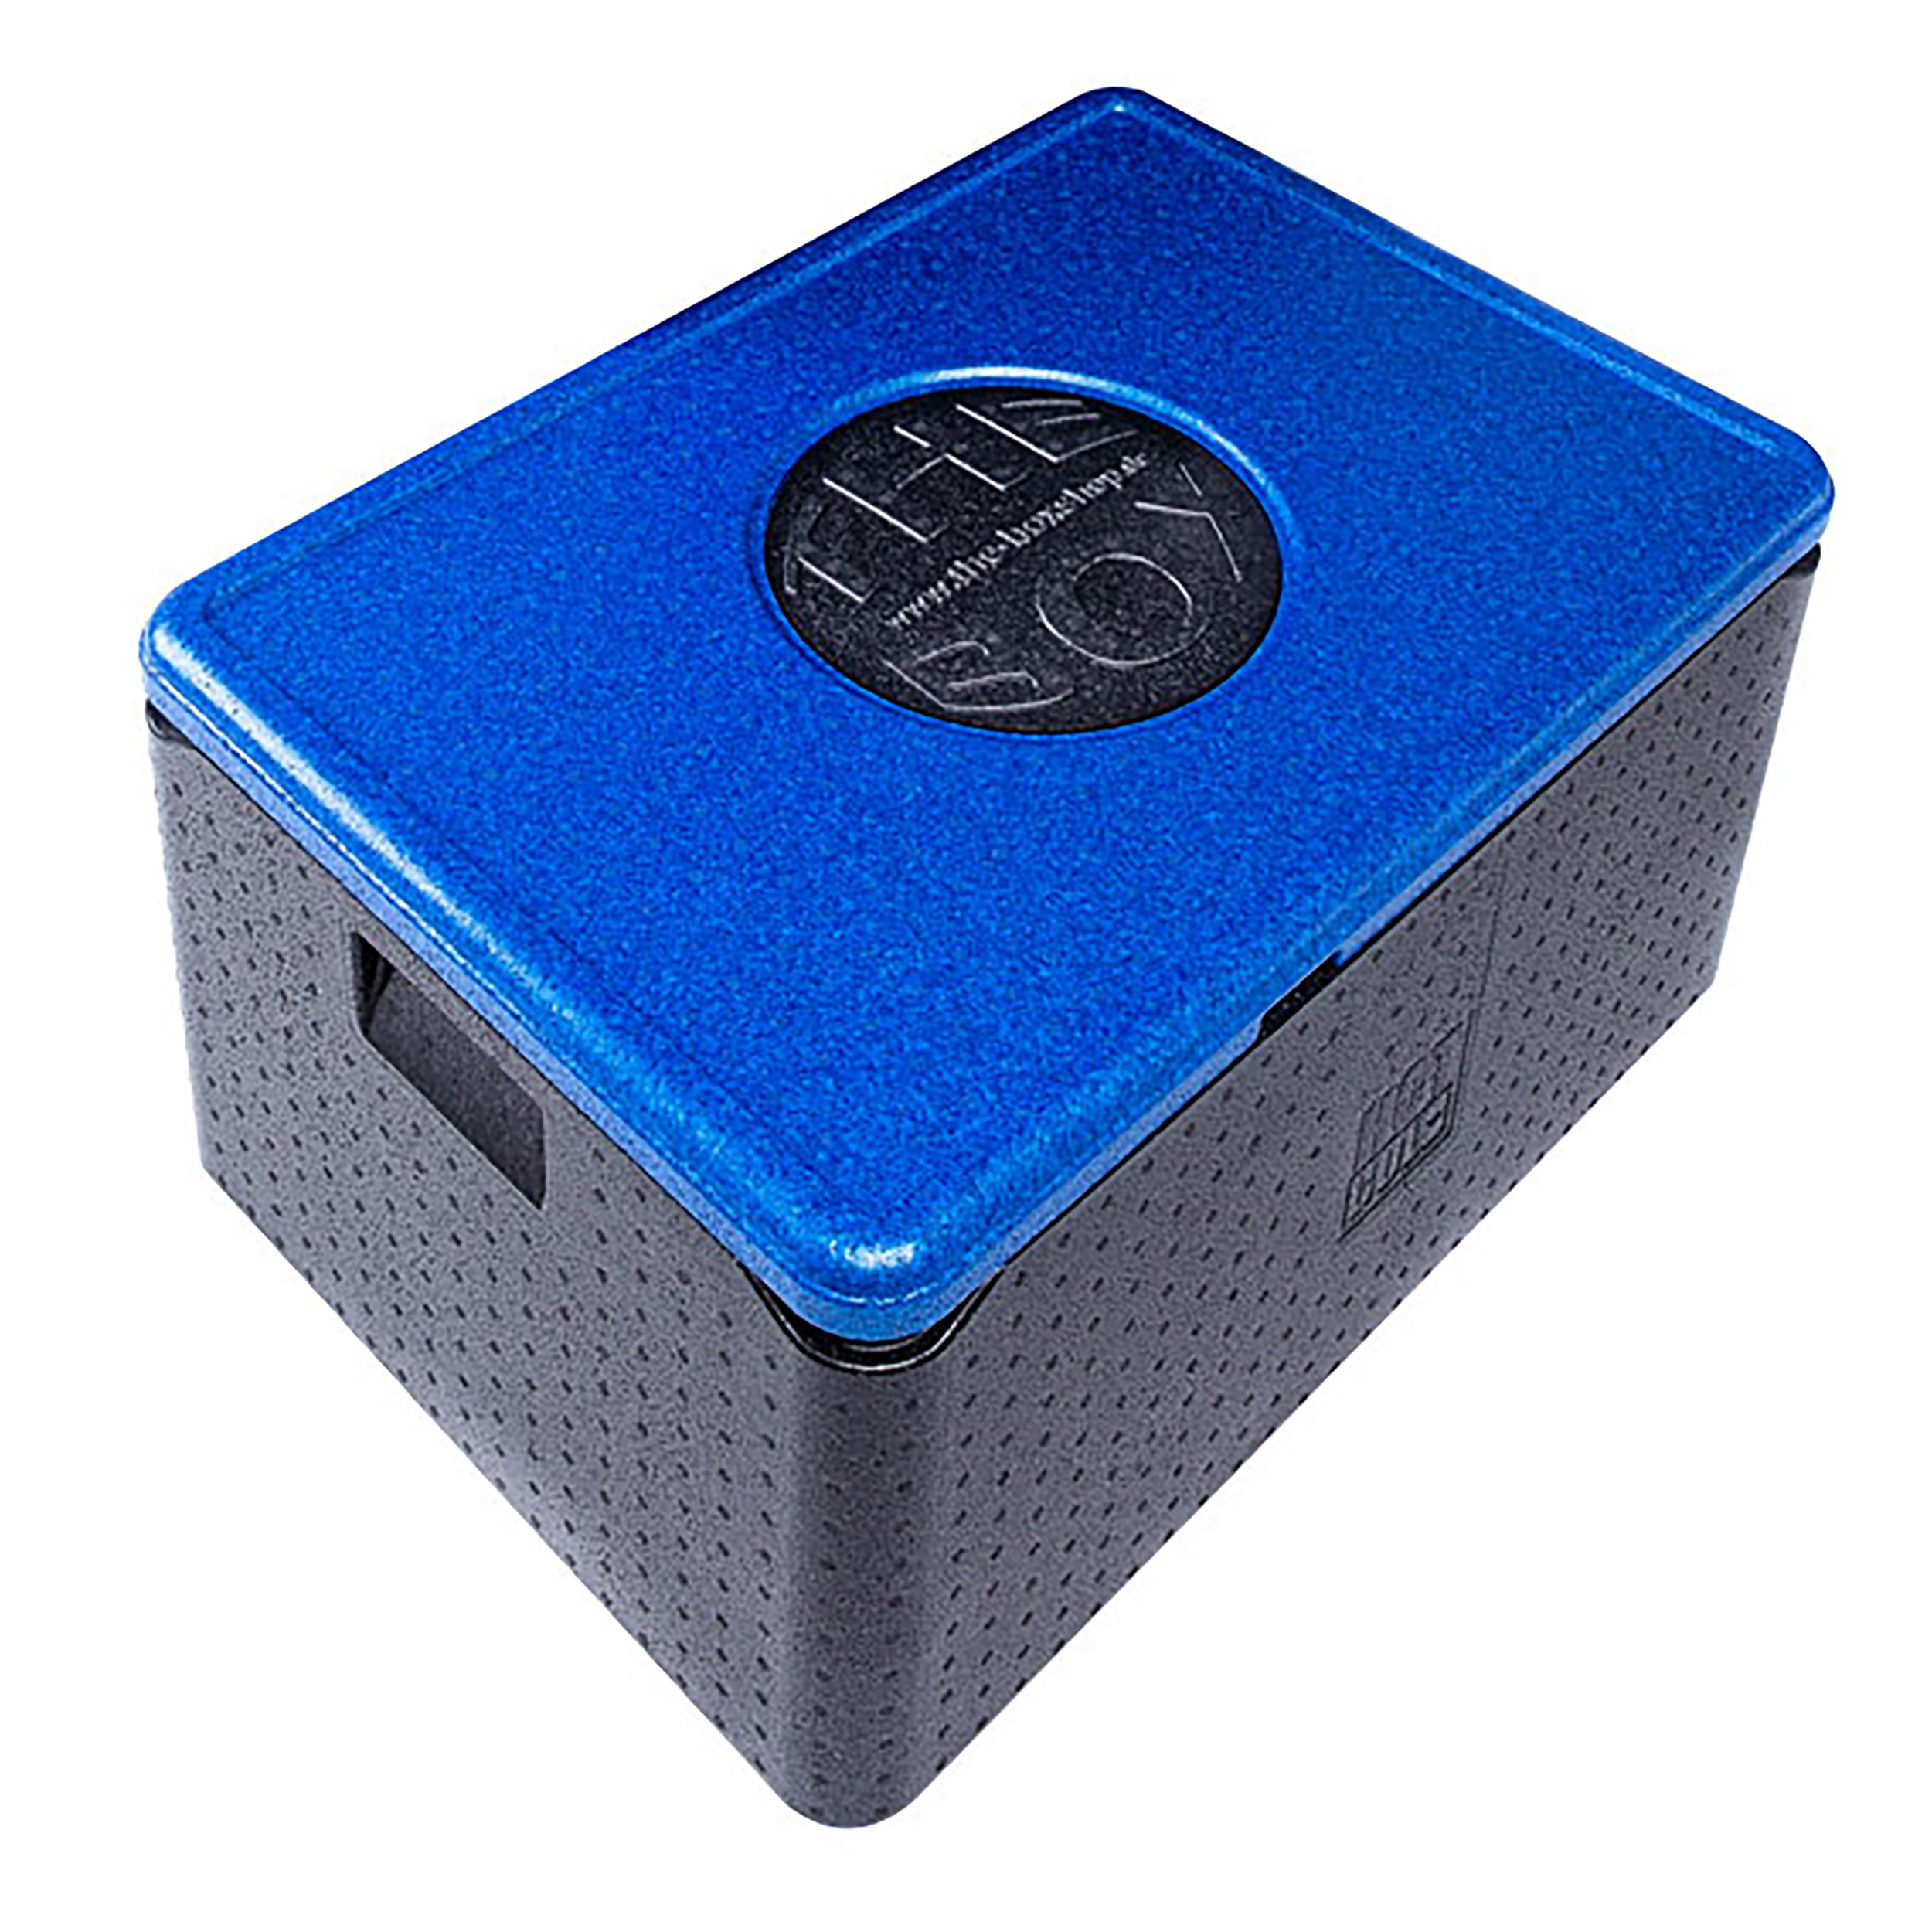 The Box Thermobox Uni groß, 68,5 x 48,5 x 36,5cm (80l), Nutzhöhe 30cm 